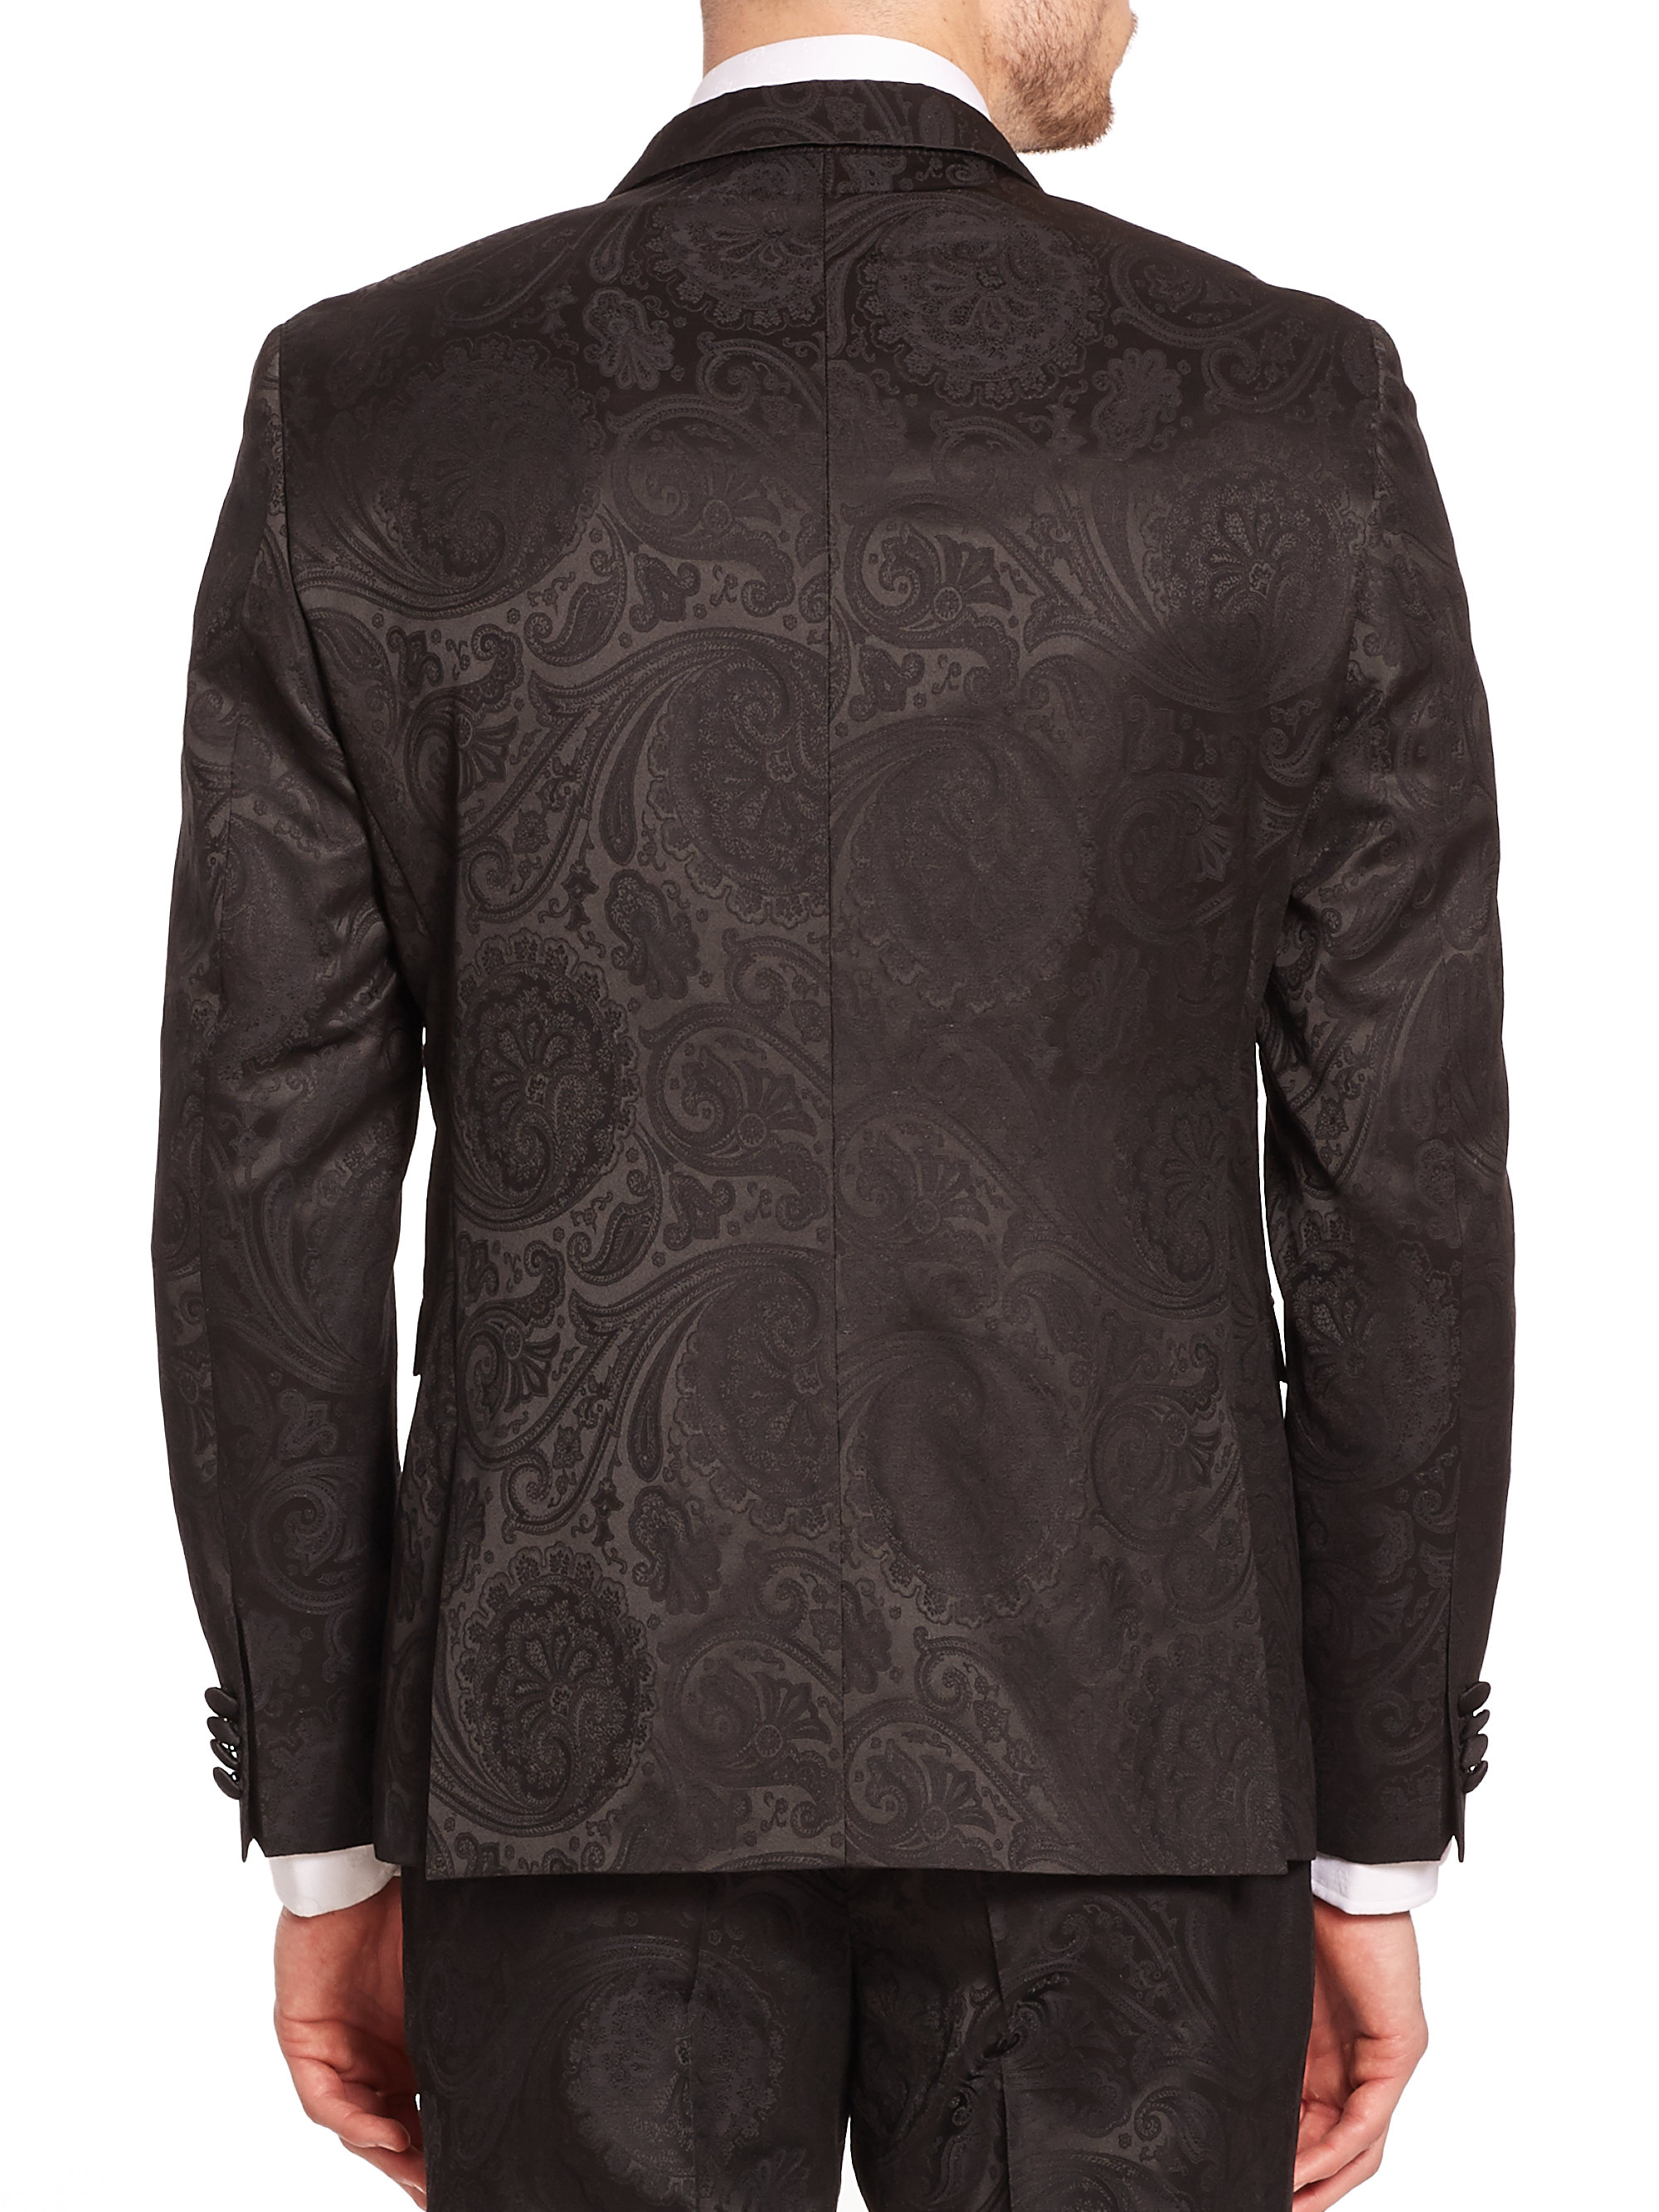 Lyst - Sand Paisley Jacquard Dinner Jacket in Black for Men